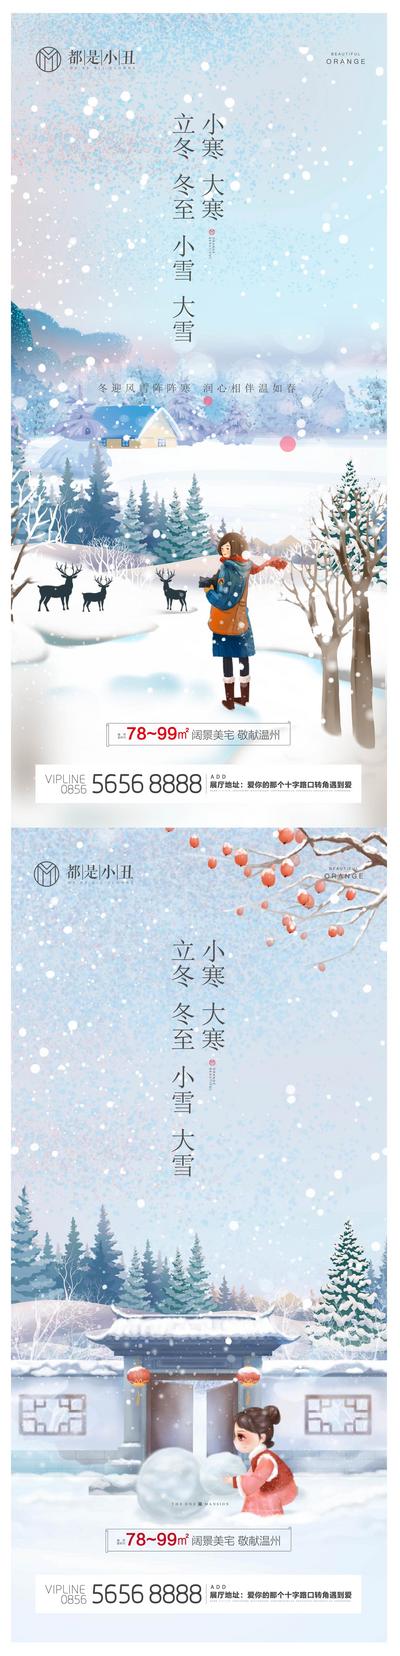 南门网 海报 二十四节气 立冬 冬至 小雪 大雪 小寒 大寒 雪景 插画